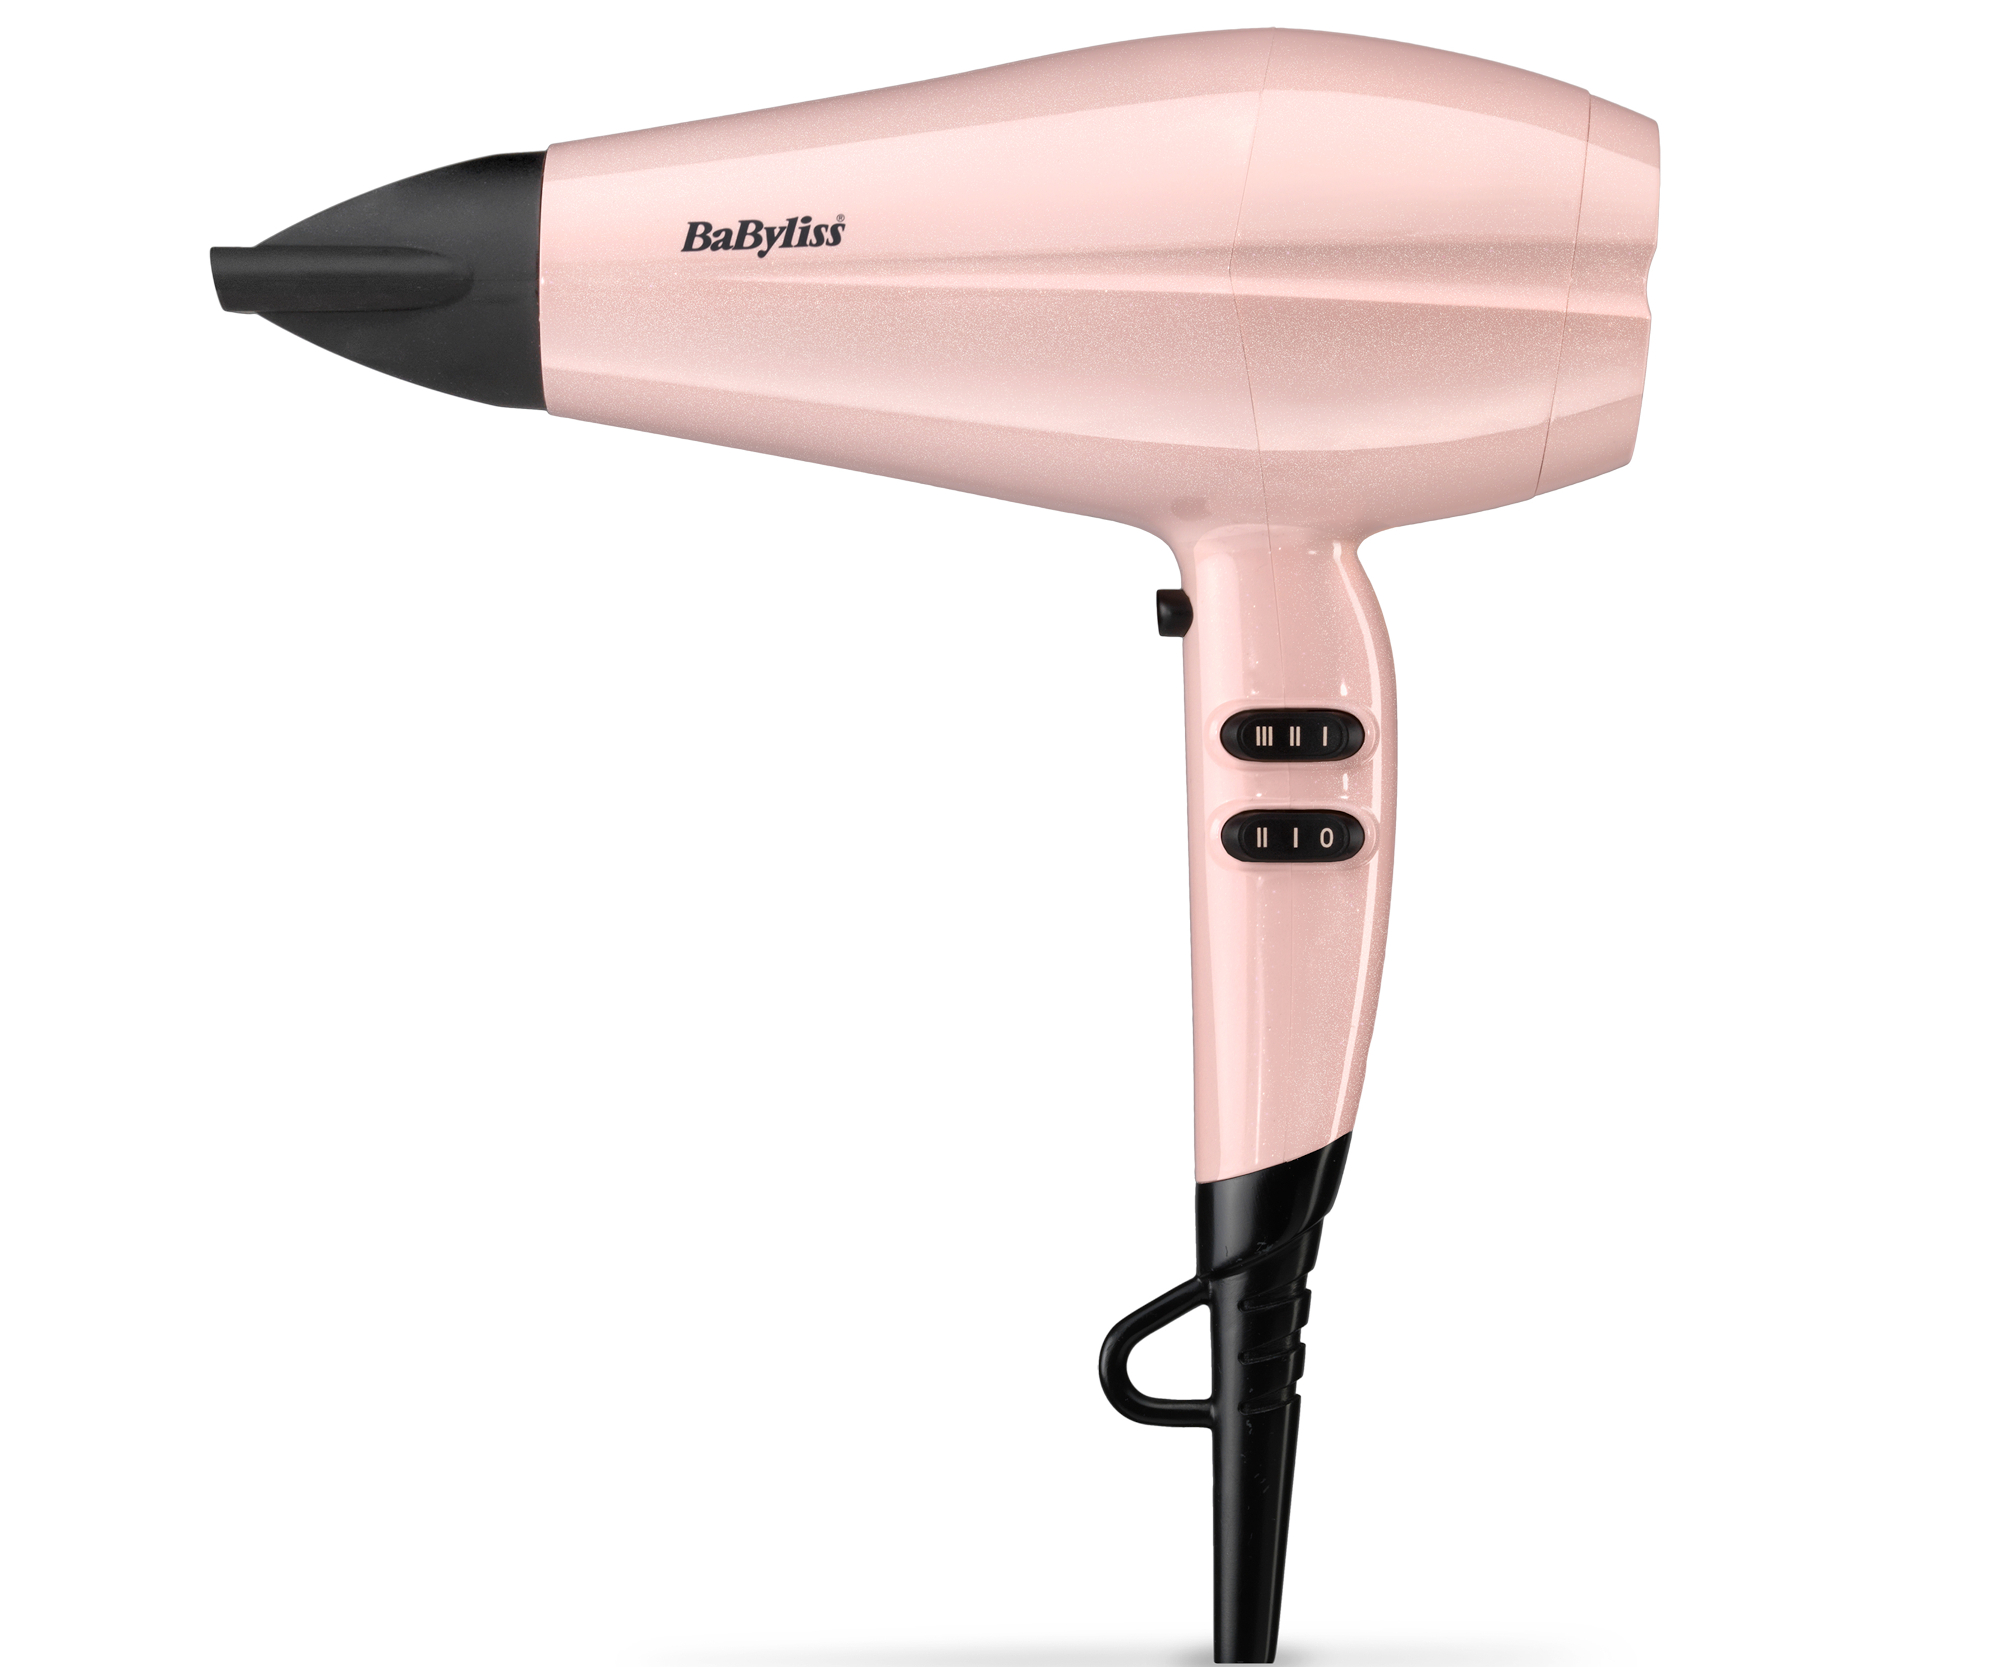 Fén na vlasy BaByliss 5337 PRE Rose Blush - 2200 W, růžový (5337PRE) + dárek zdarma